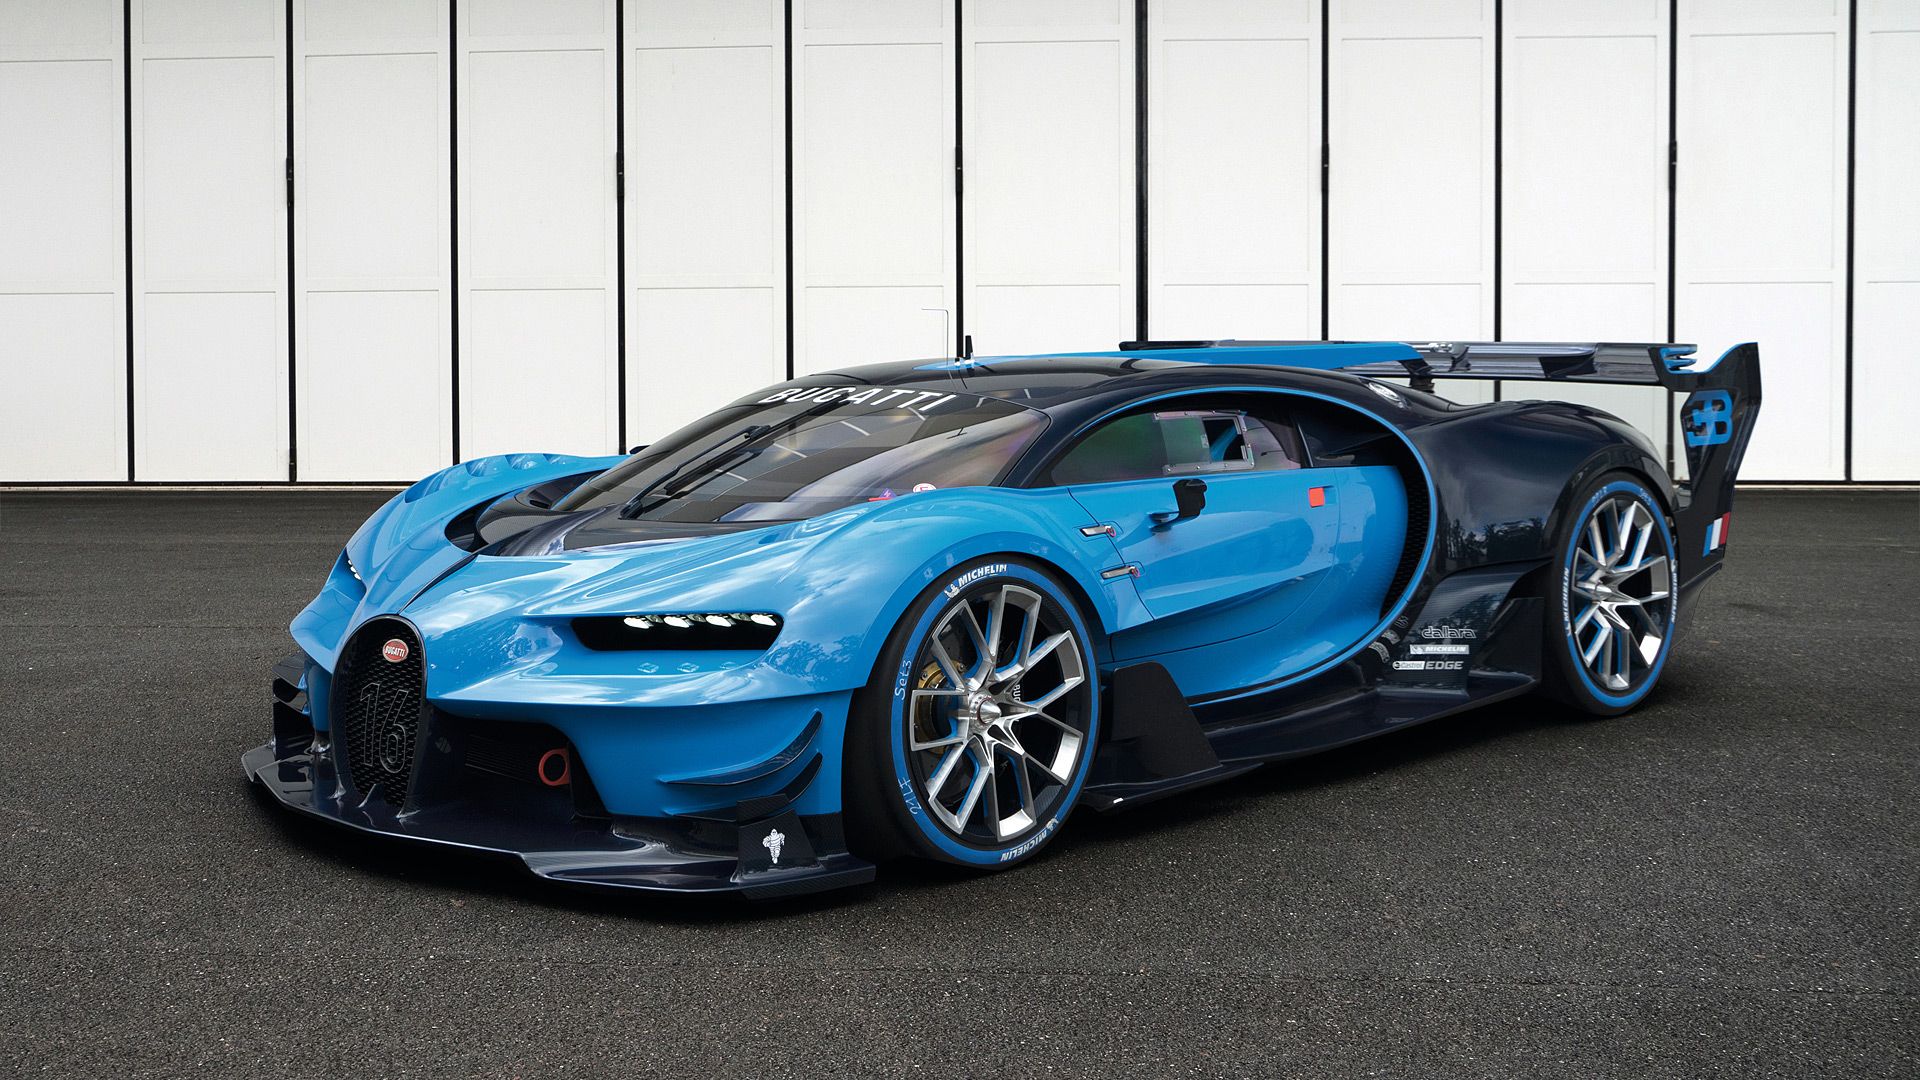 Bugatti Vision Gran Turismo Wallpaper